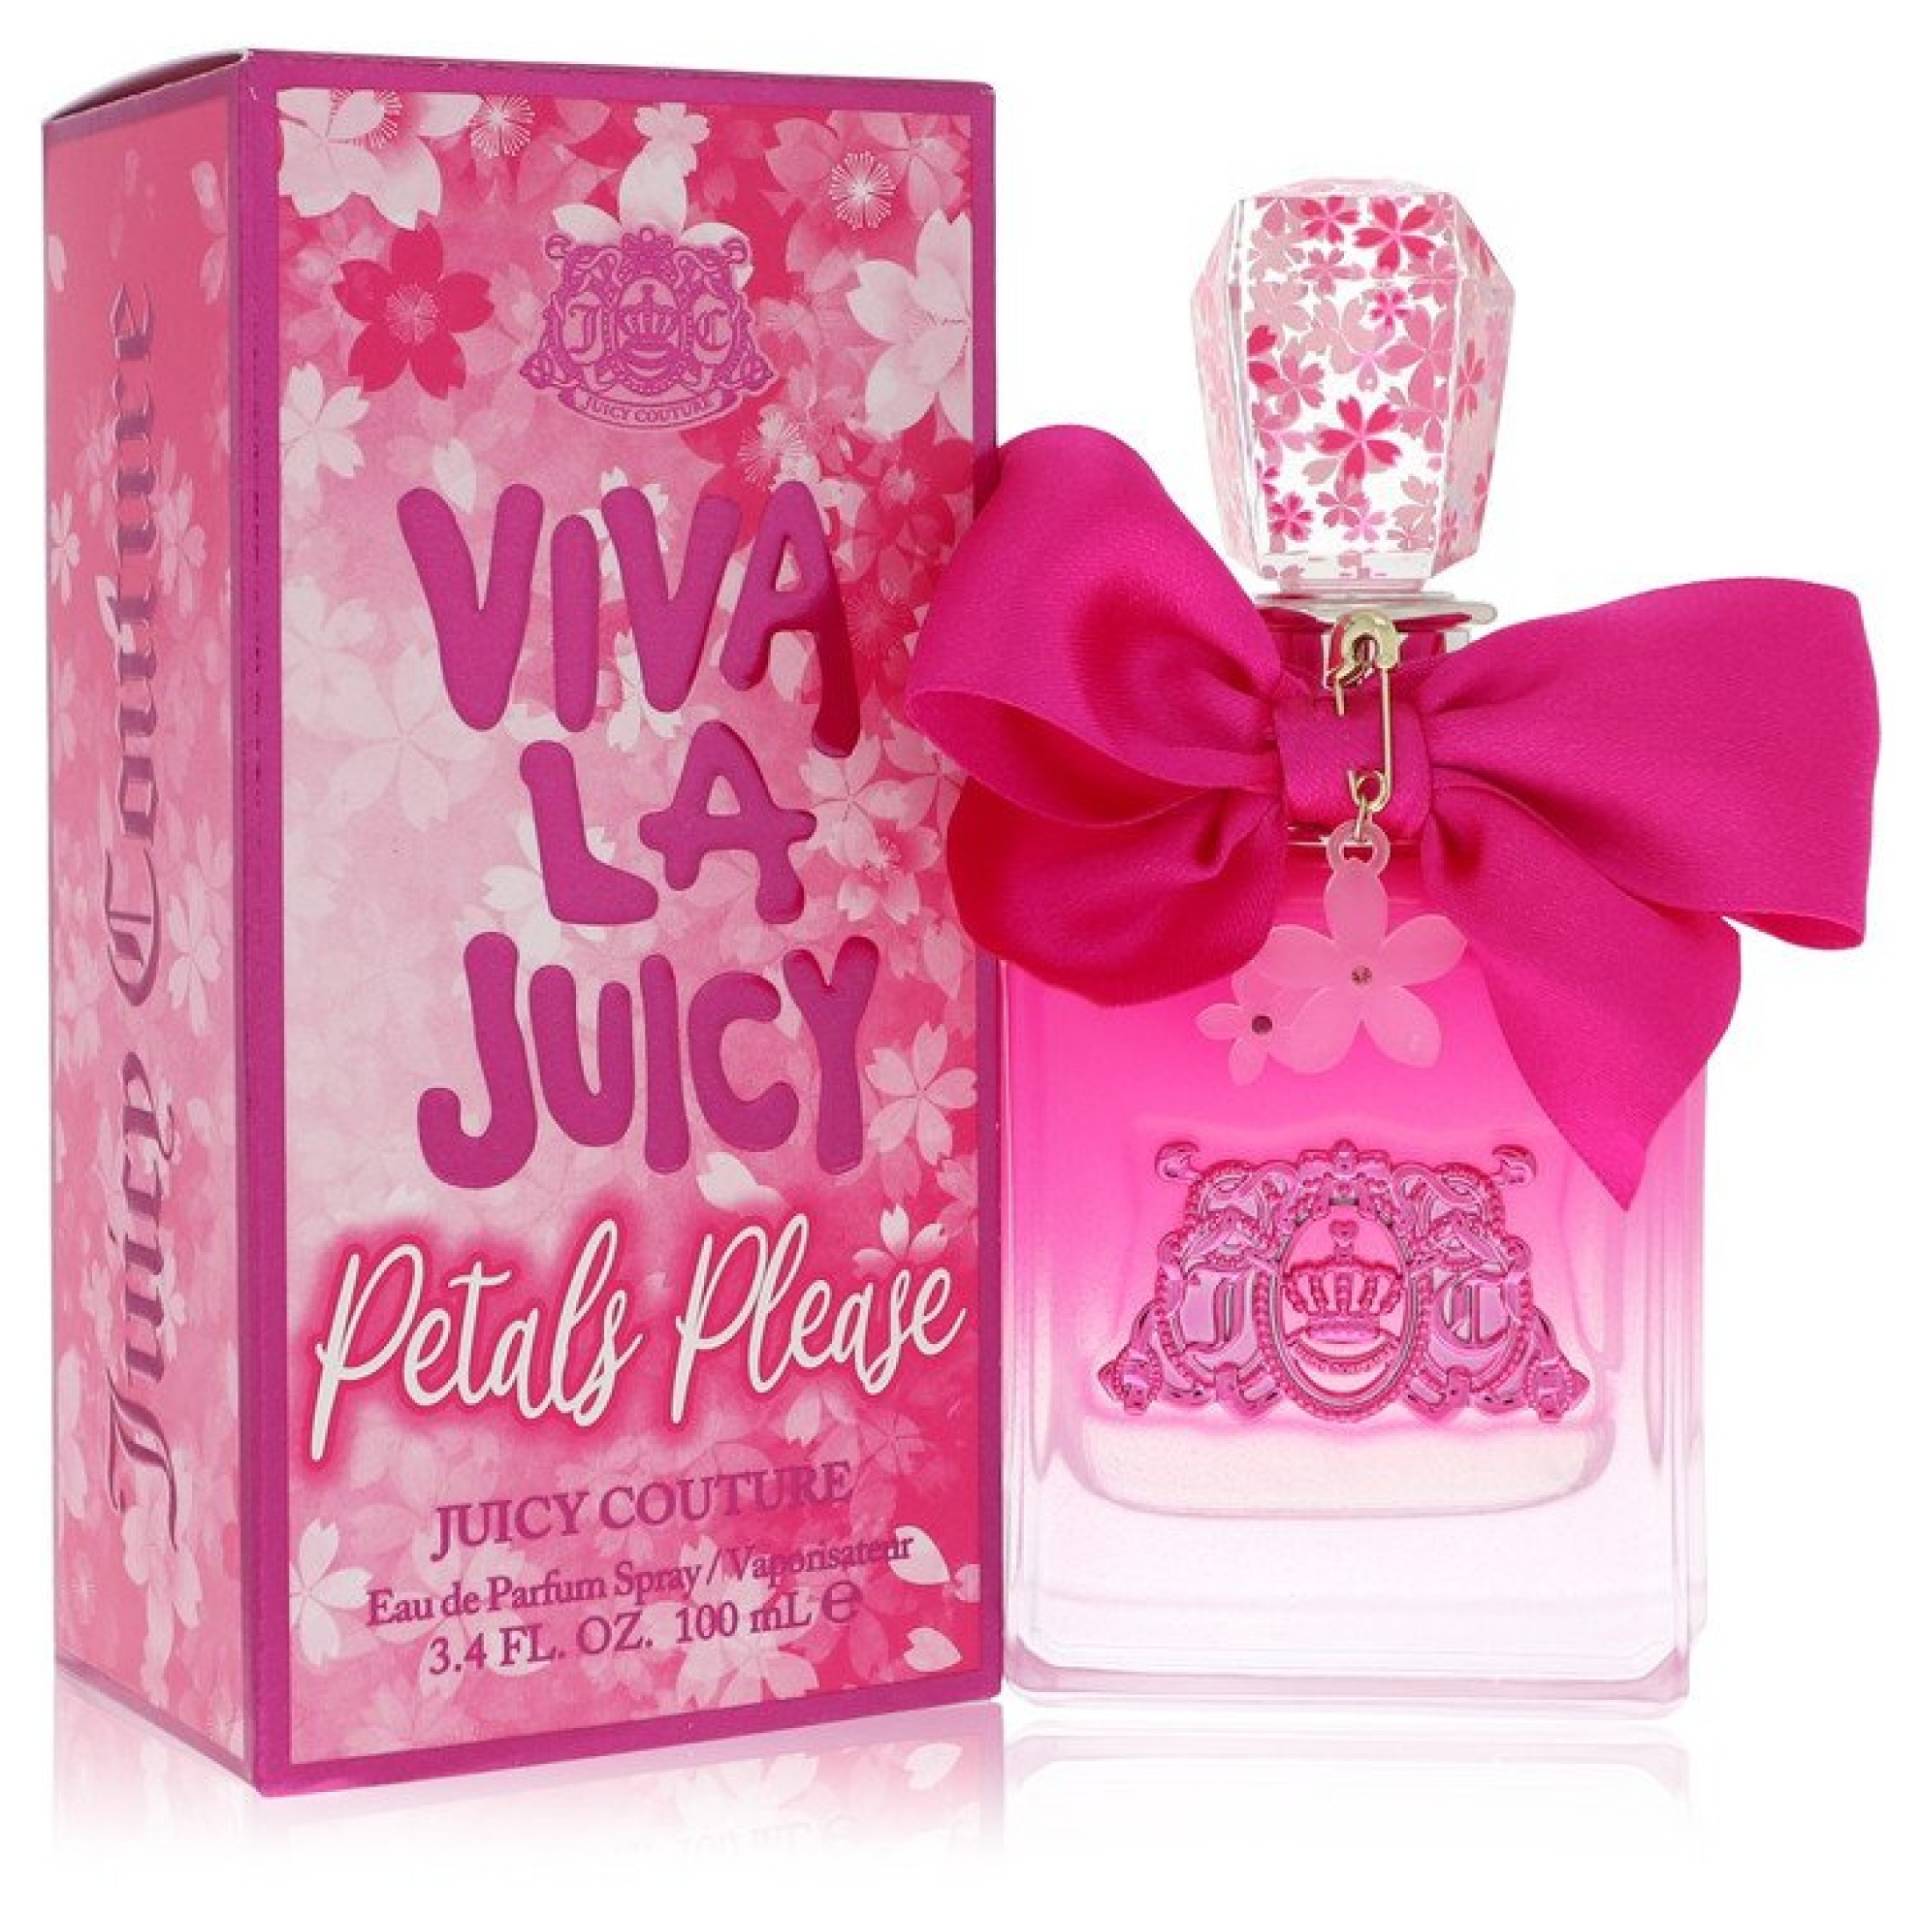 Juicy Couture Viva La Juicy Petals Please Eau De Parfum Spray 101 ml von Juicy Couture